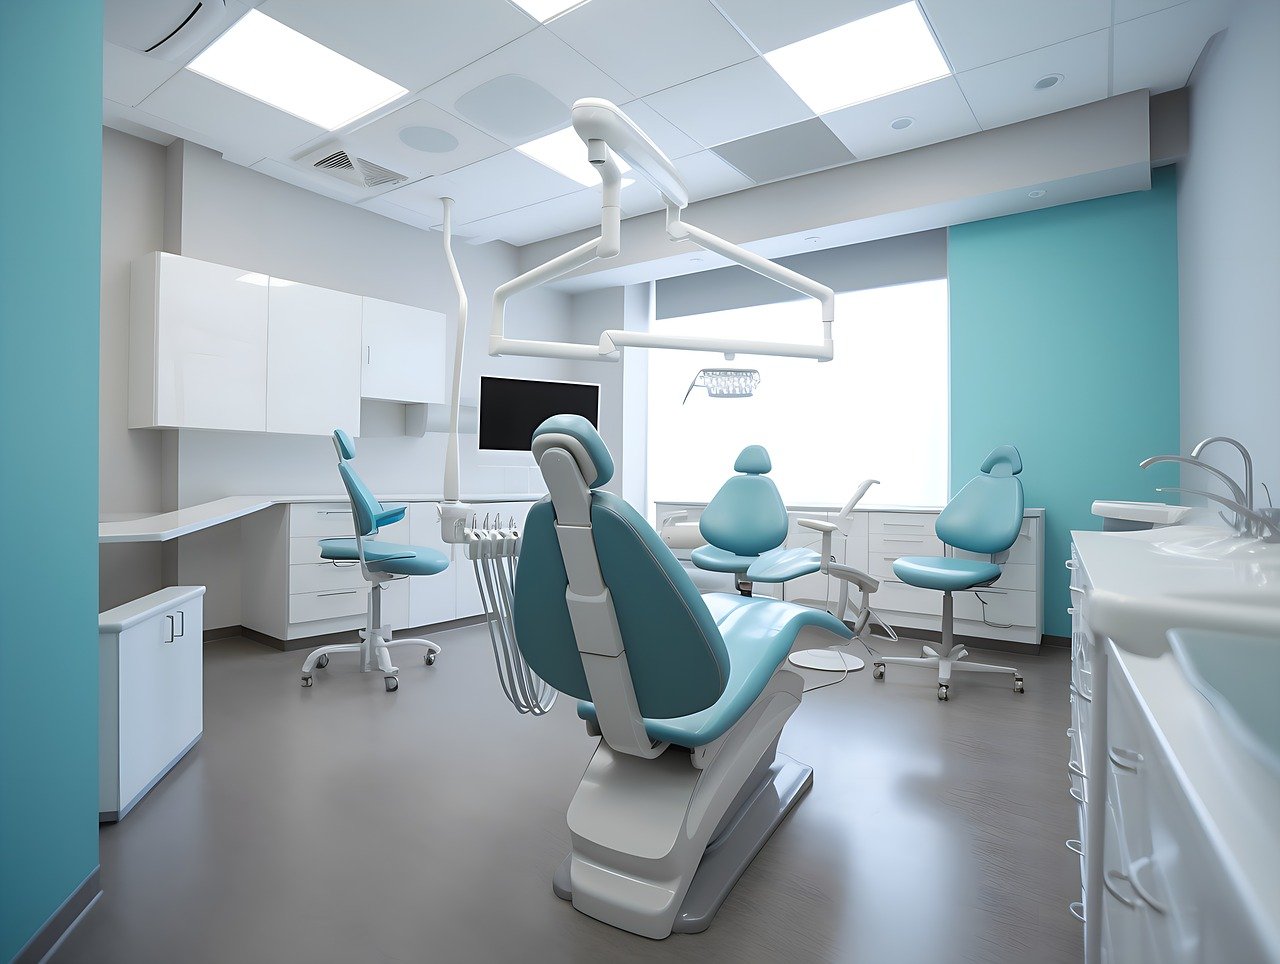 Sprawdzony ortodonta – gdzie znaleźć najlepszego specjalistę w Poznaniu?